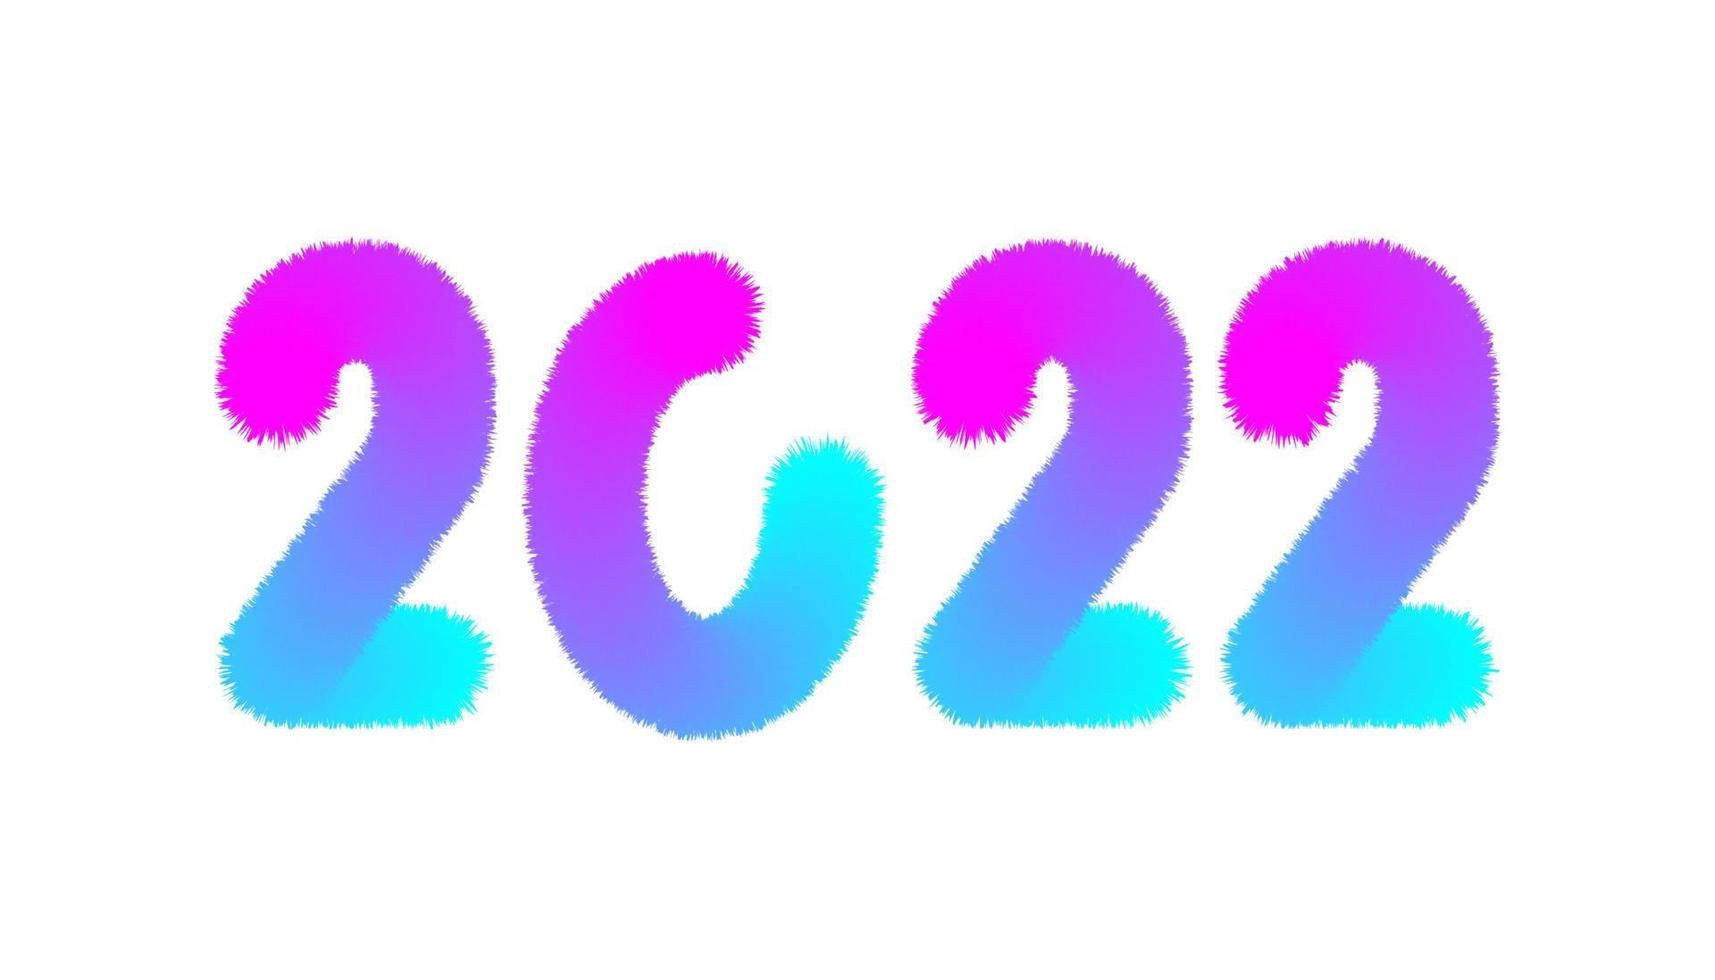 Testo di felice anno nuovo 2022. modello di progettazione celebrazione tipografia poster, banner o biglietto di auguri per buon natale e felice anno nuovo. illustrazione vettoriale vintage